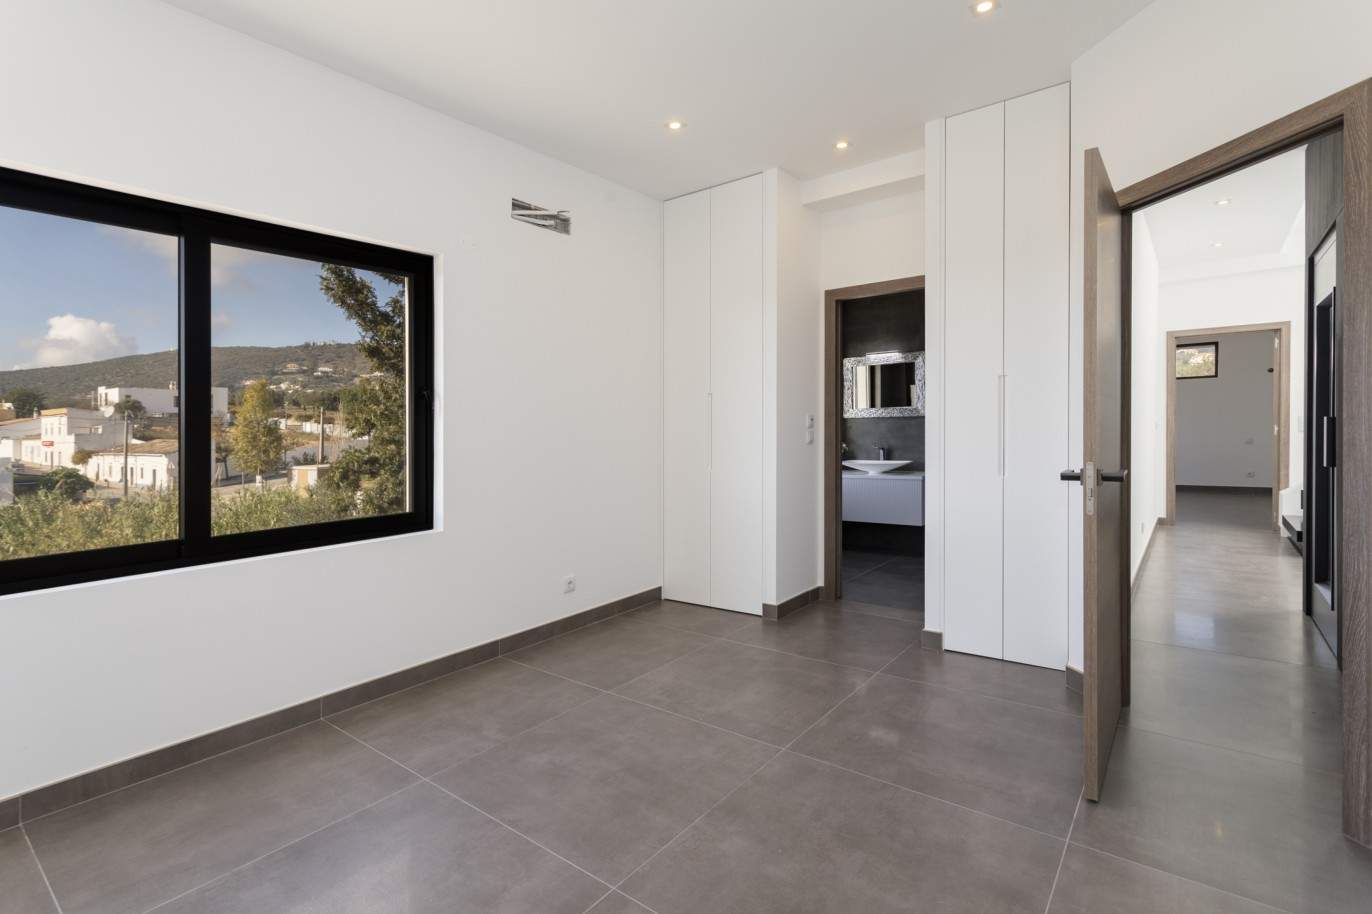 Villa de 3 dormitorios, con piscina, en venta en Santa Barbara de Nexe, Algarve_213415